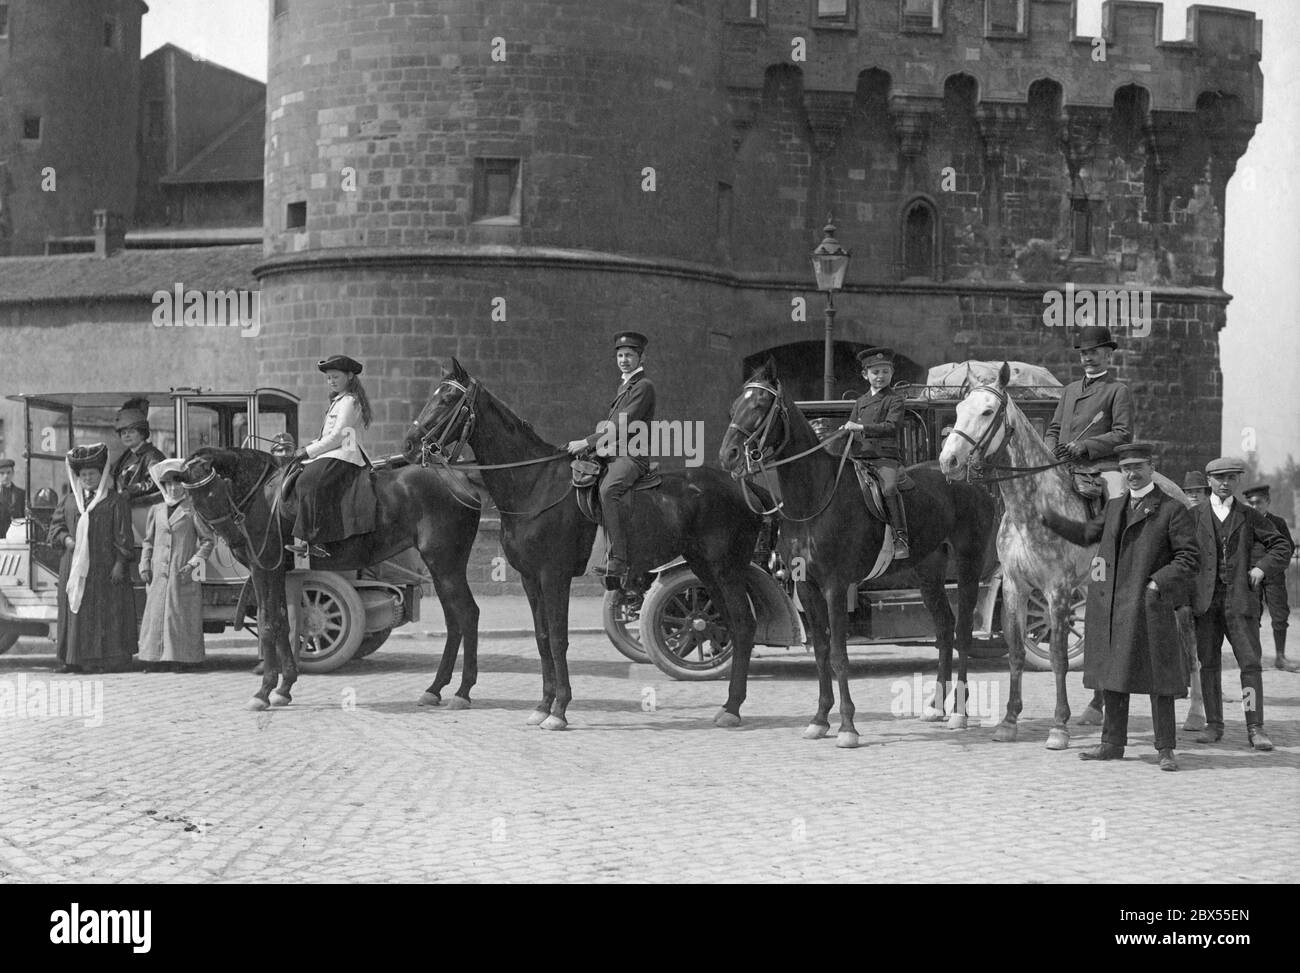 Da sinistra: Il principe otto Schaumburg-Lippe, contessa Hagenburg, moglie del principe, in automobile. A cavallo: La Contessa Hermine, il Conte Guglielmo, il Conte otto Heinrich von Hagenburg. Foto Stock